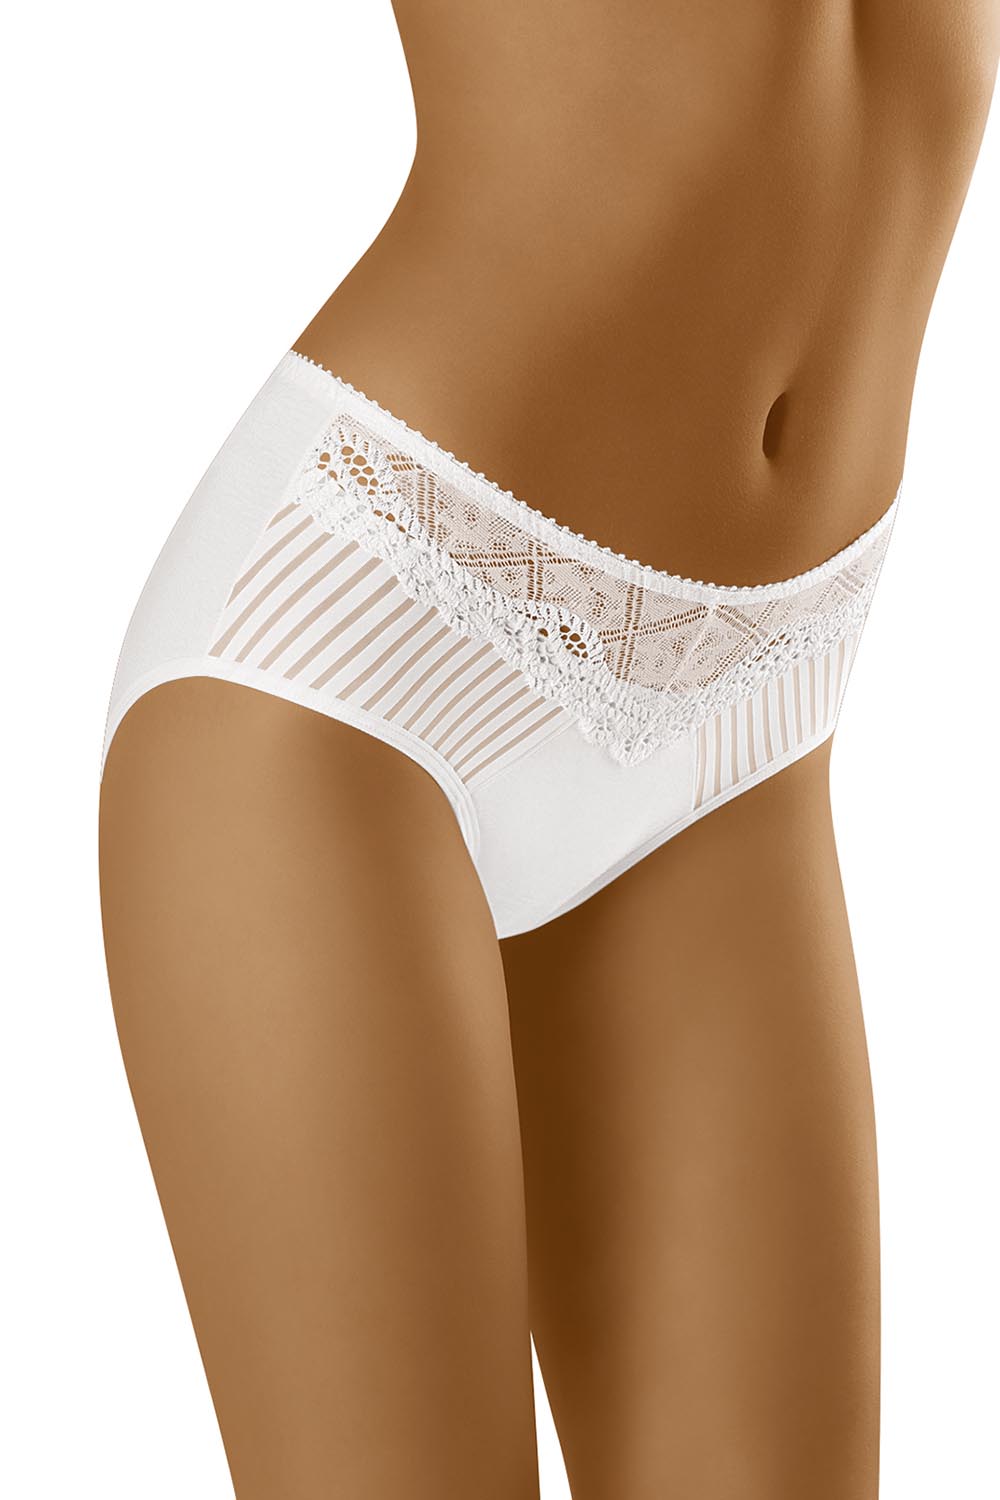 Panties model 129508 Wolbar white Ladies